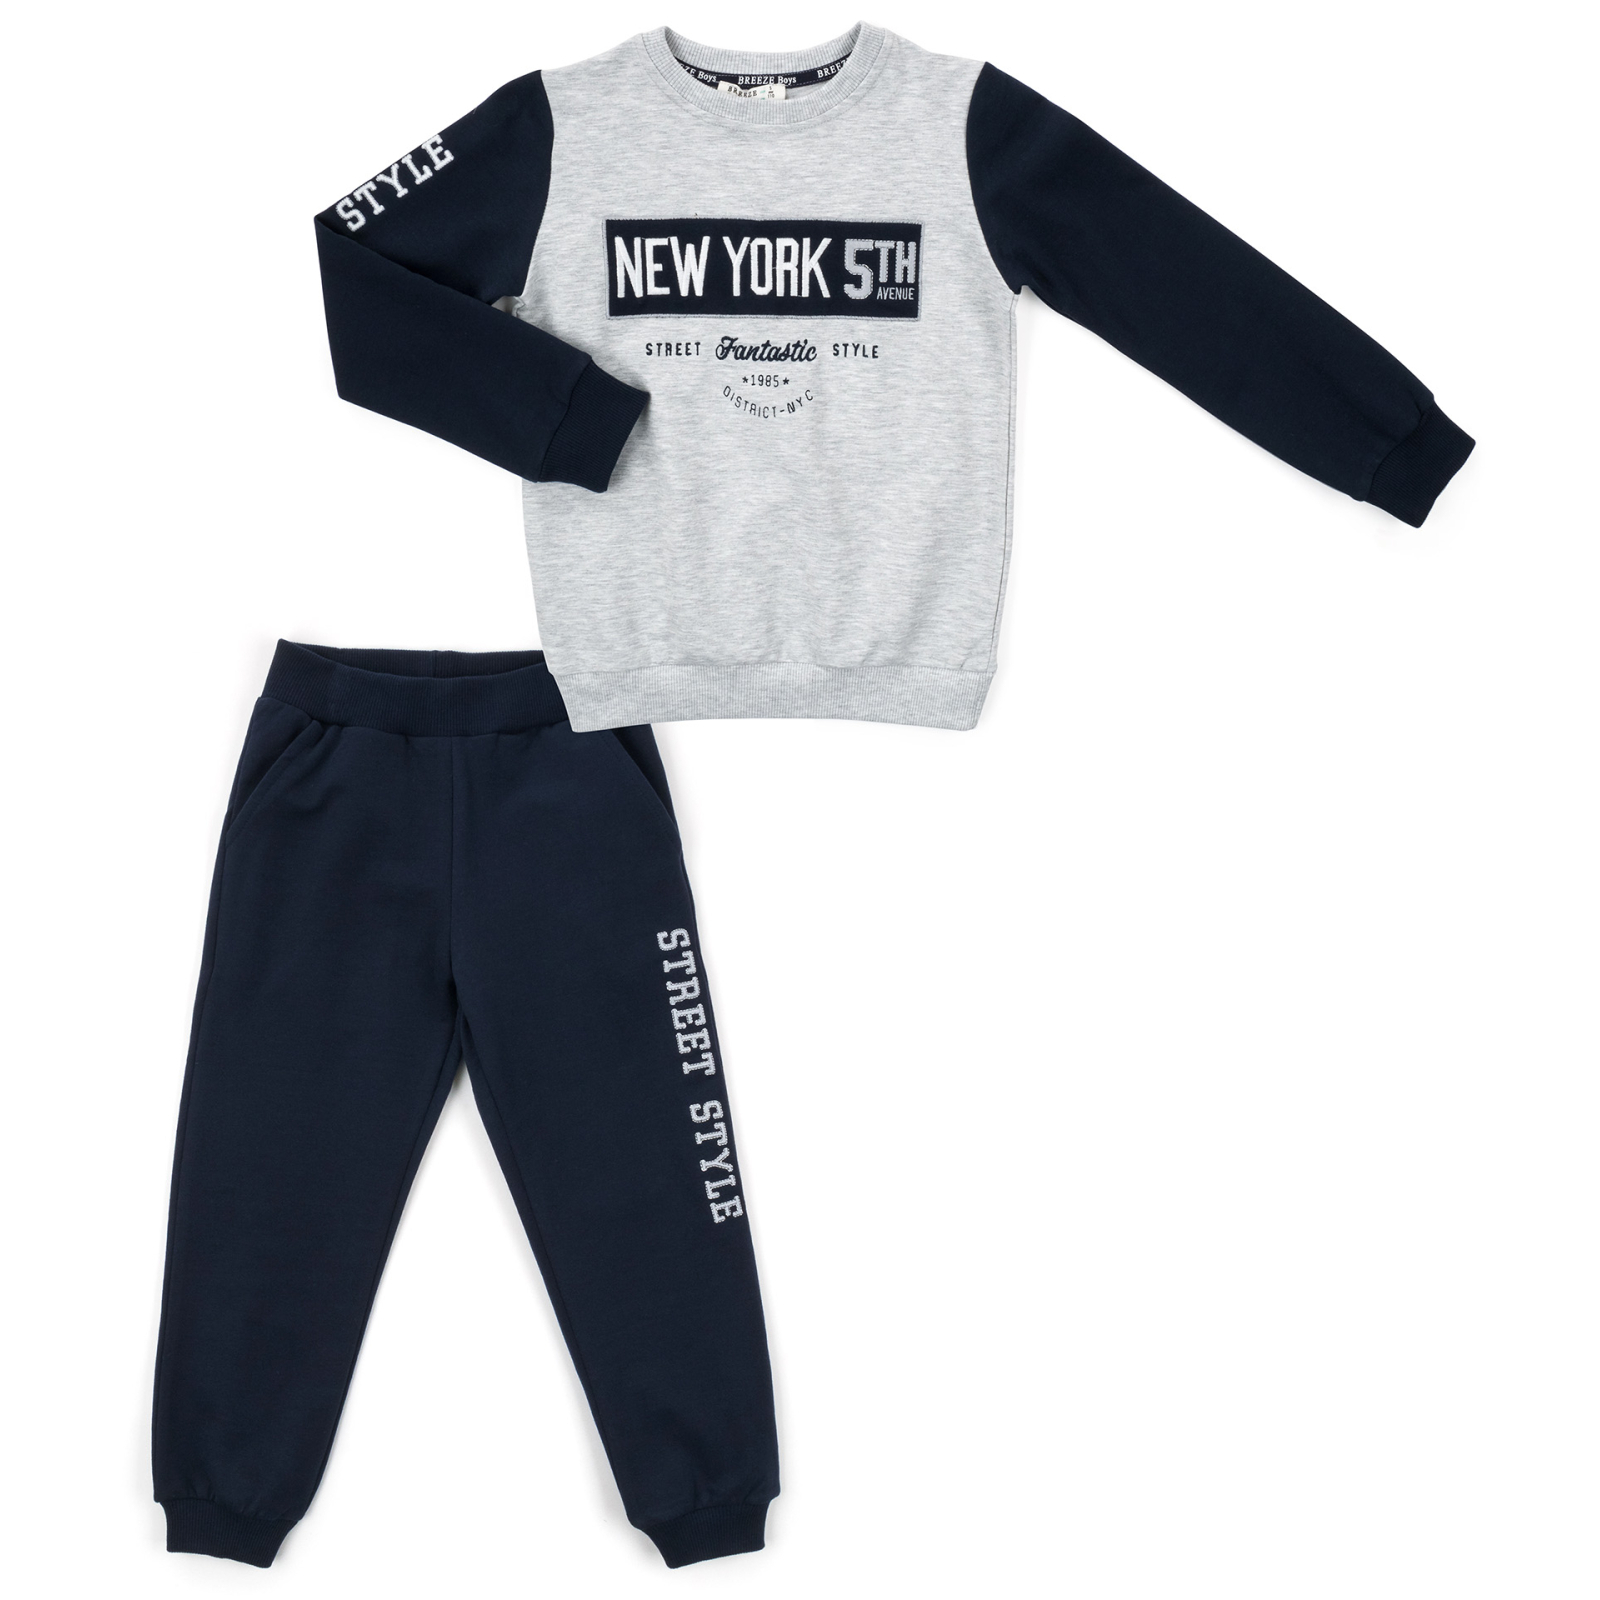 Набор детской одежды A-Yugi "NEW YORK" (13678-110B-gray)